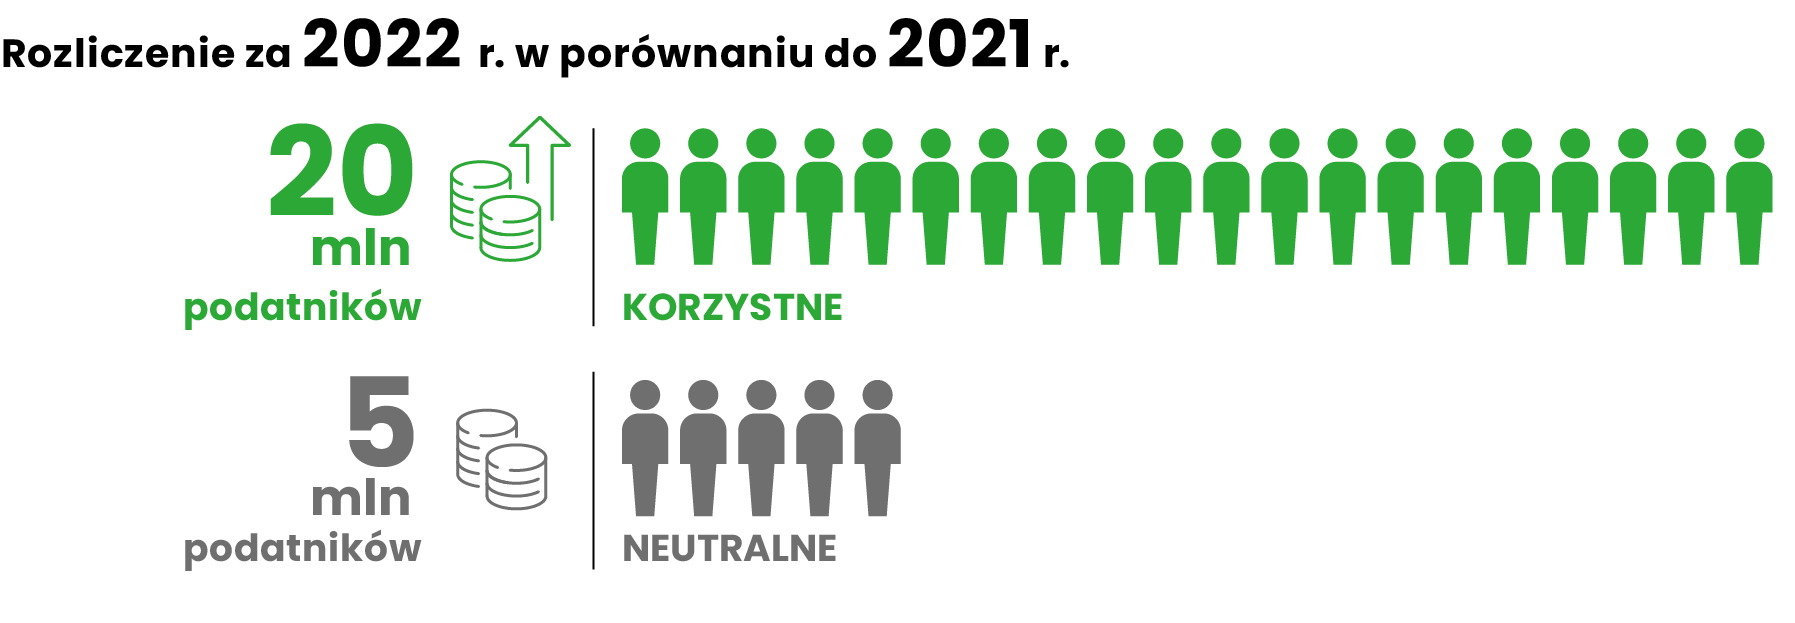 Rozliczenie PIT: zwroty i dopłaty podatku za 2022 r. - infografika, Rozliczenie za 2022 r. w porównaniu do 2021 r.